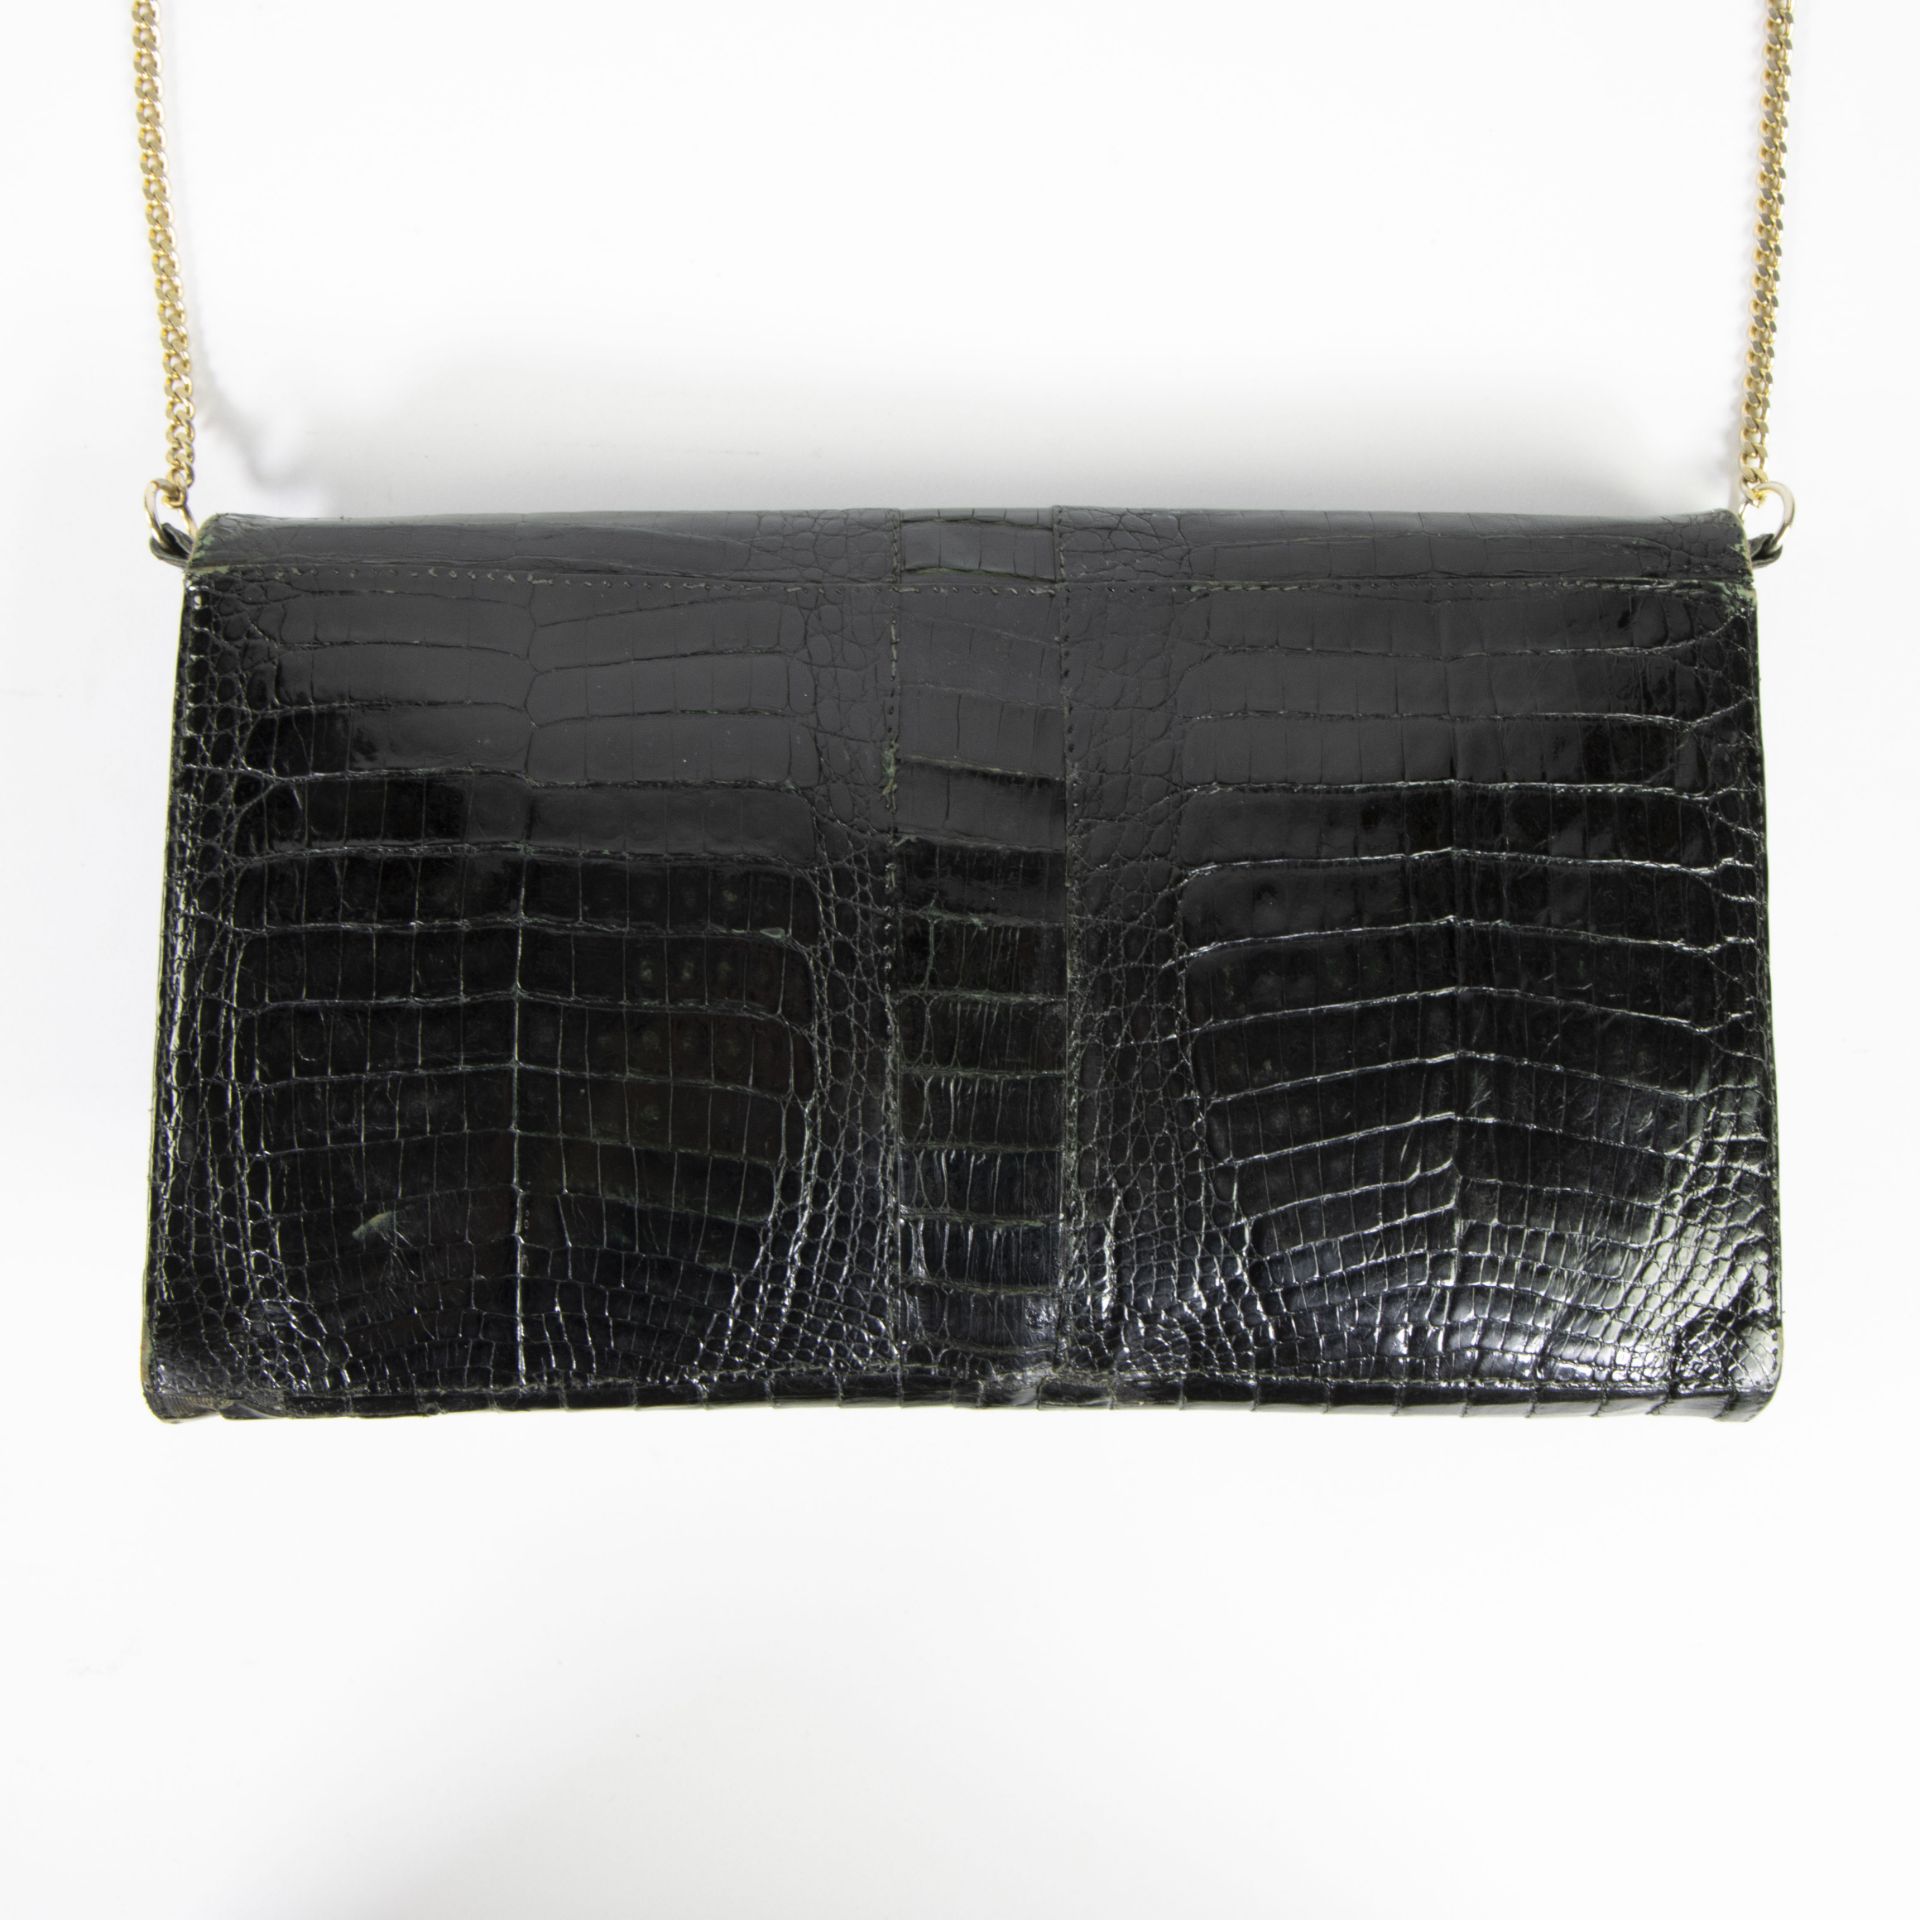 Black croco handbag - Bild 2 aus 2